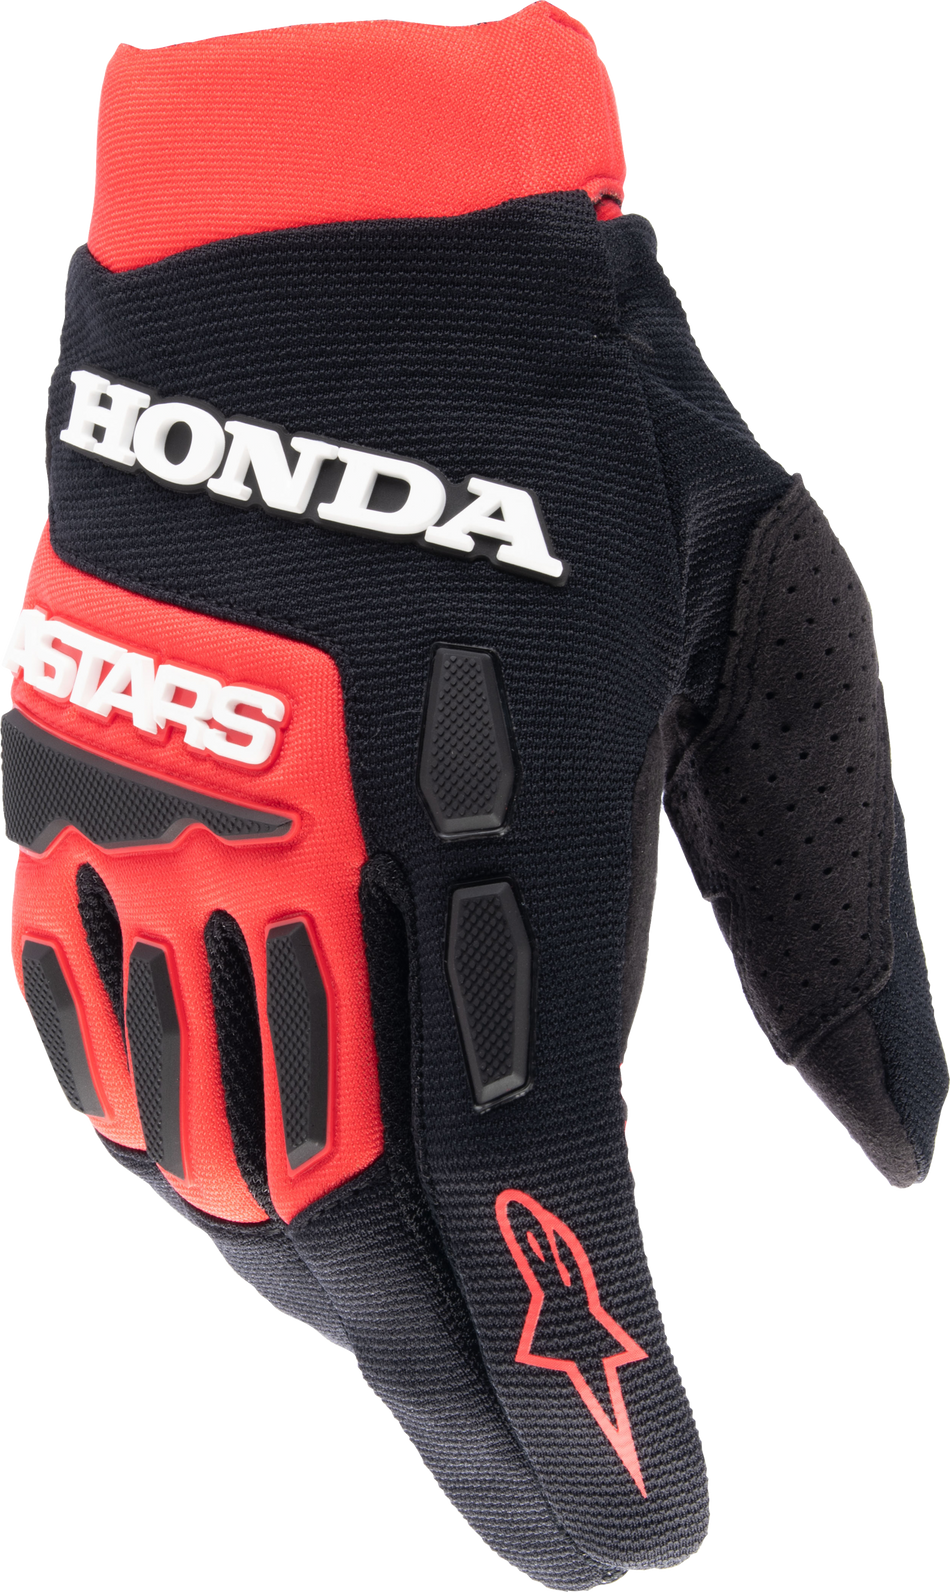 ALPINESTARS Honda Full Bore Gloves Bright Red/Black 4x 3563823-3031-4XL